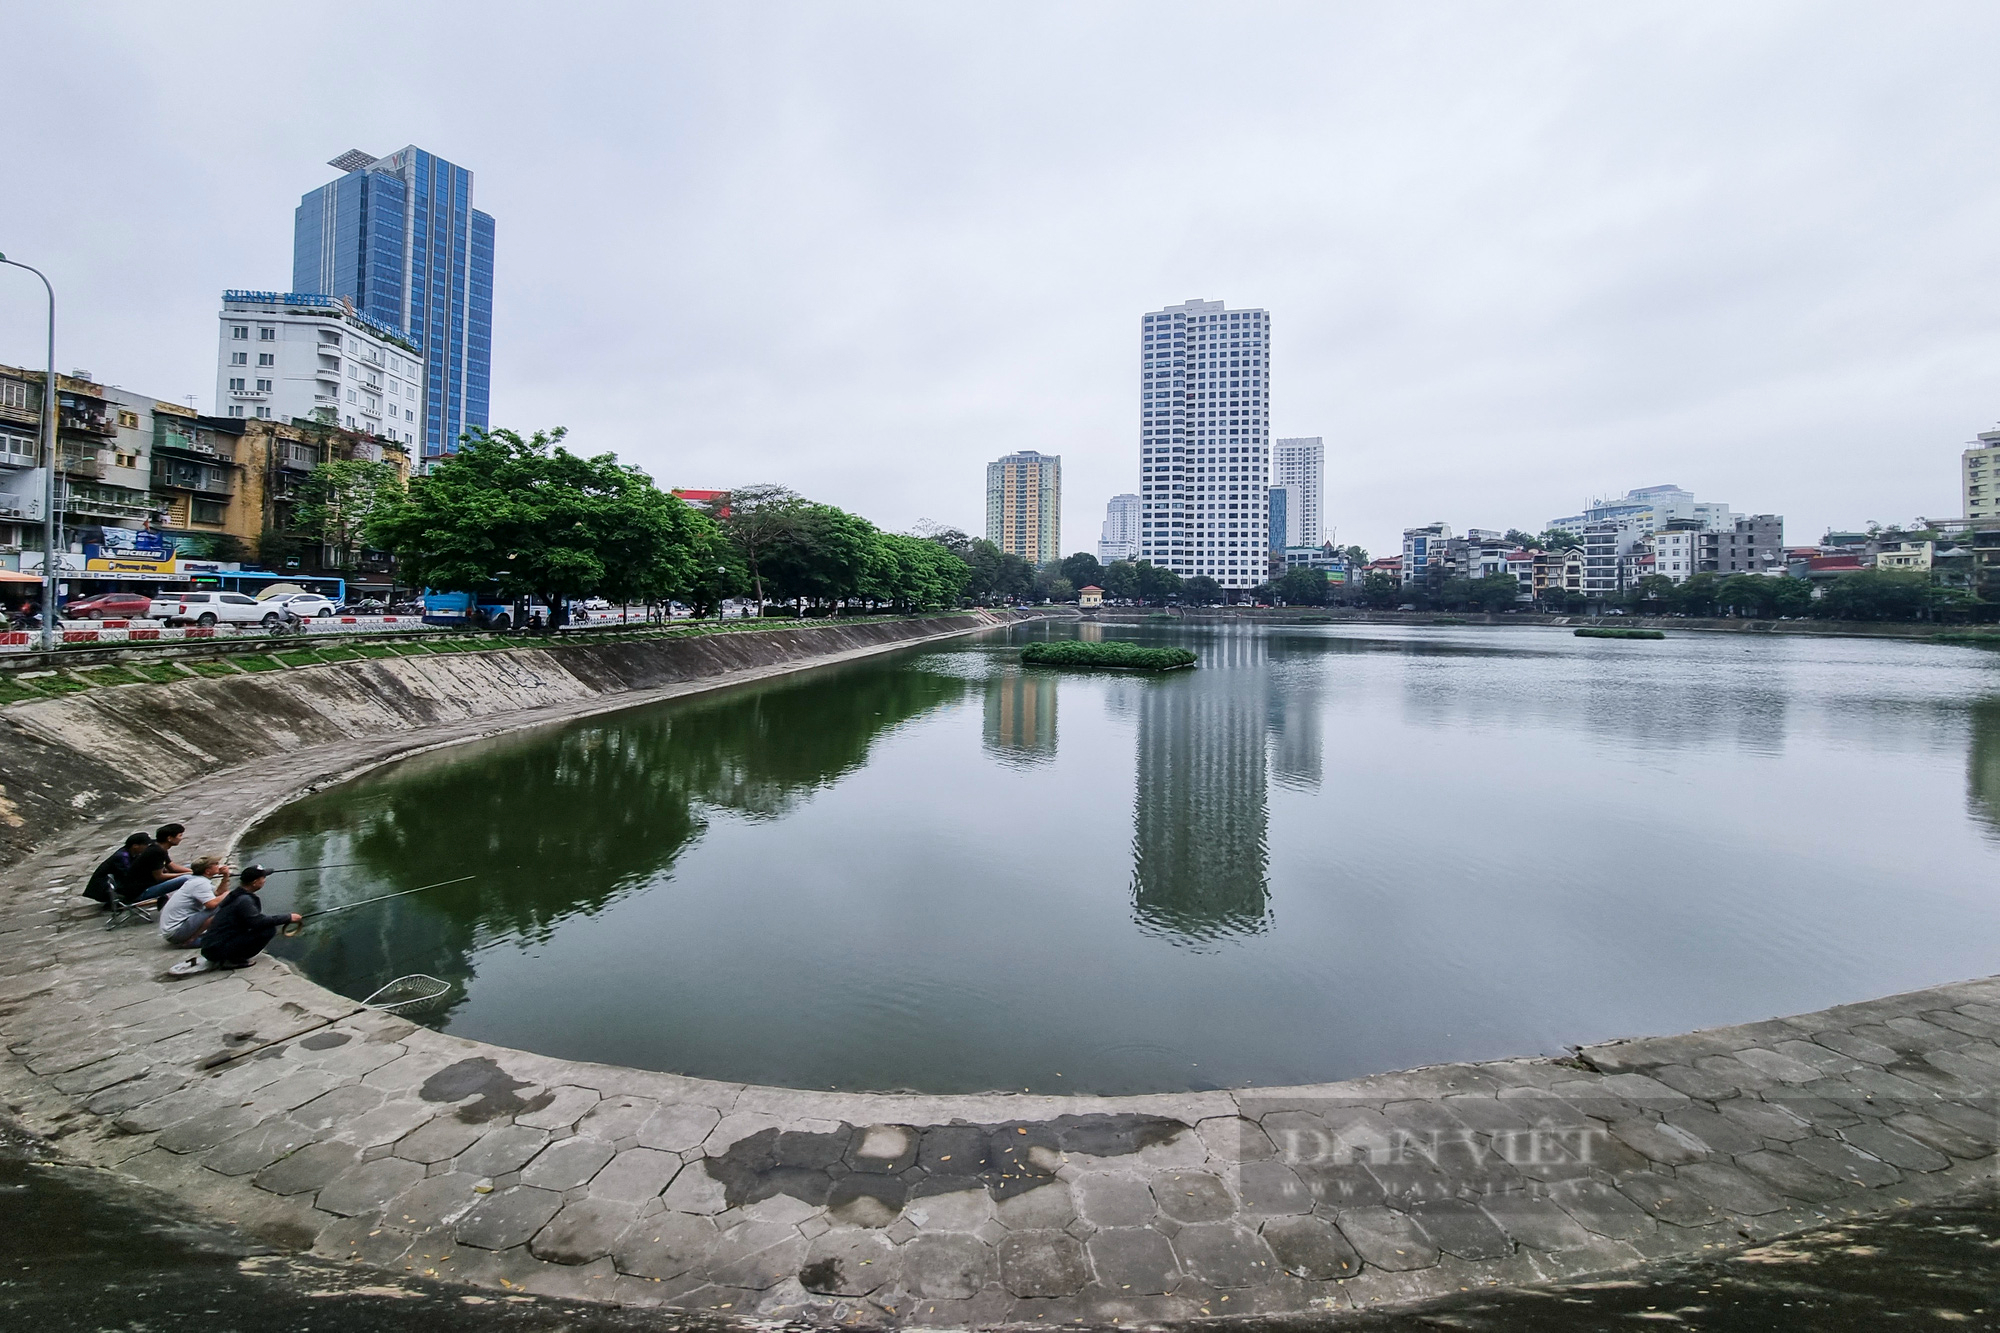 Cận cảnh khu vực hồ Ngọc Khánh sắp được Hà Nội triển khai thành phố đi bộ - Ảnh 2.